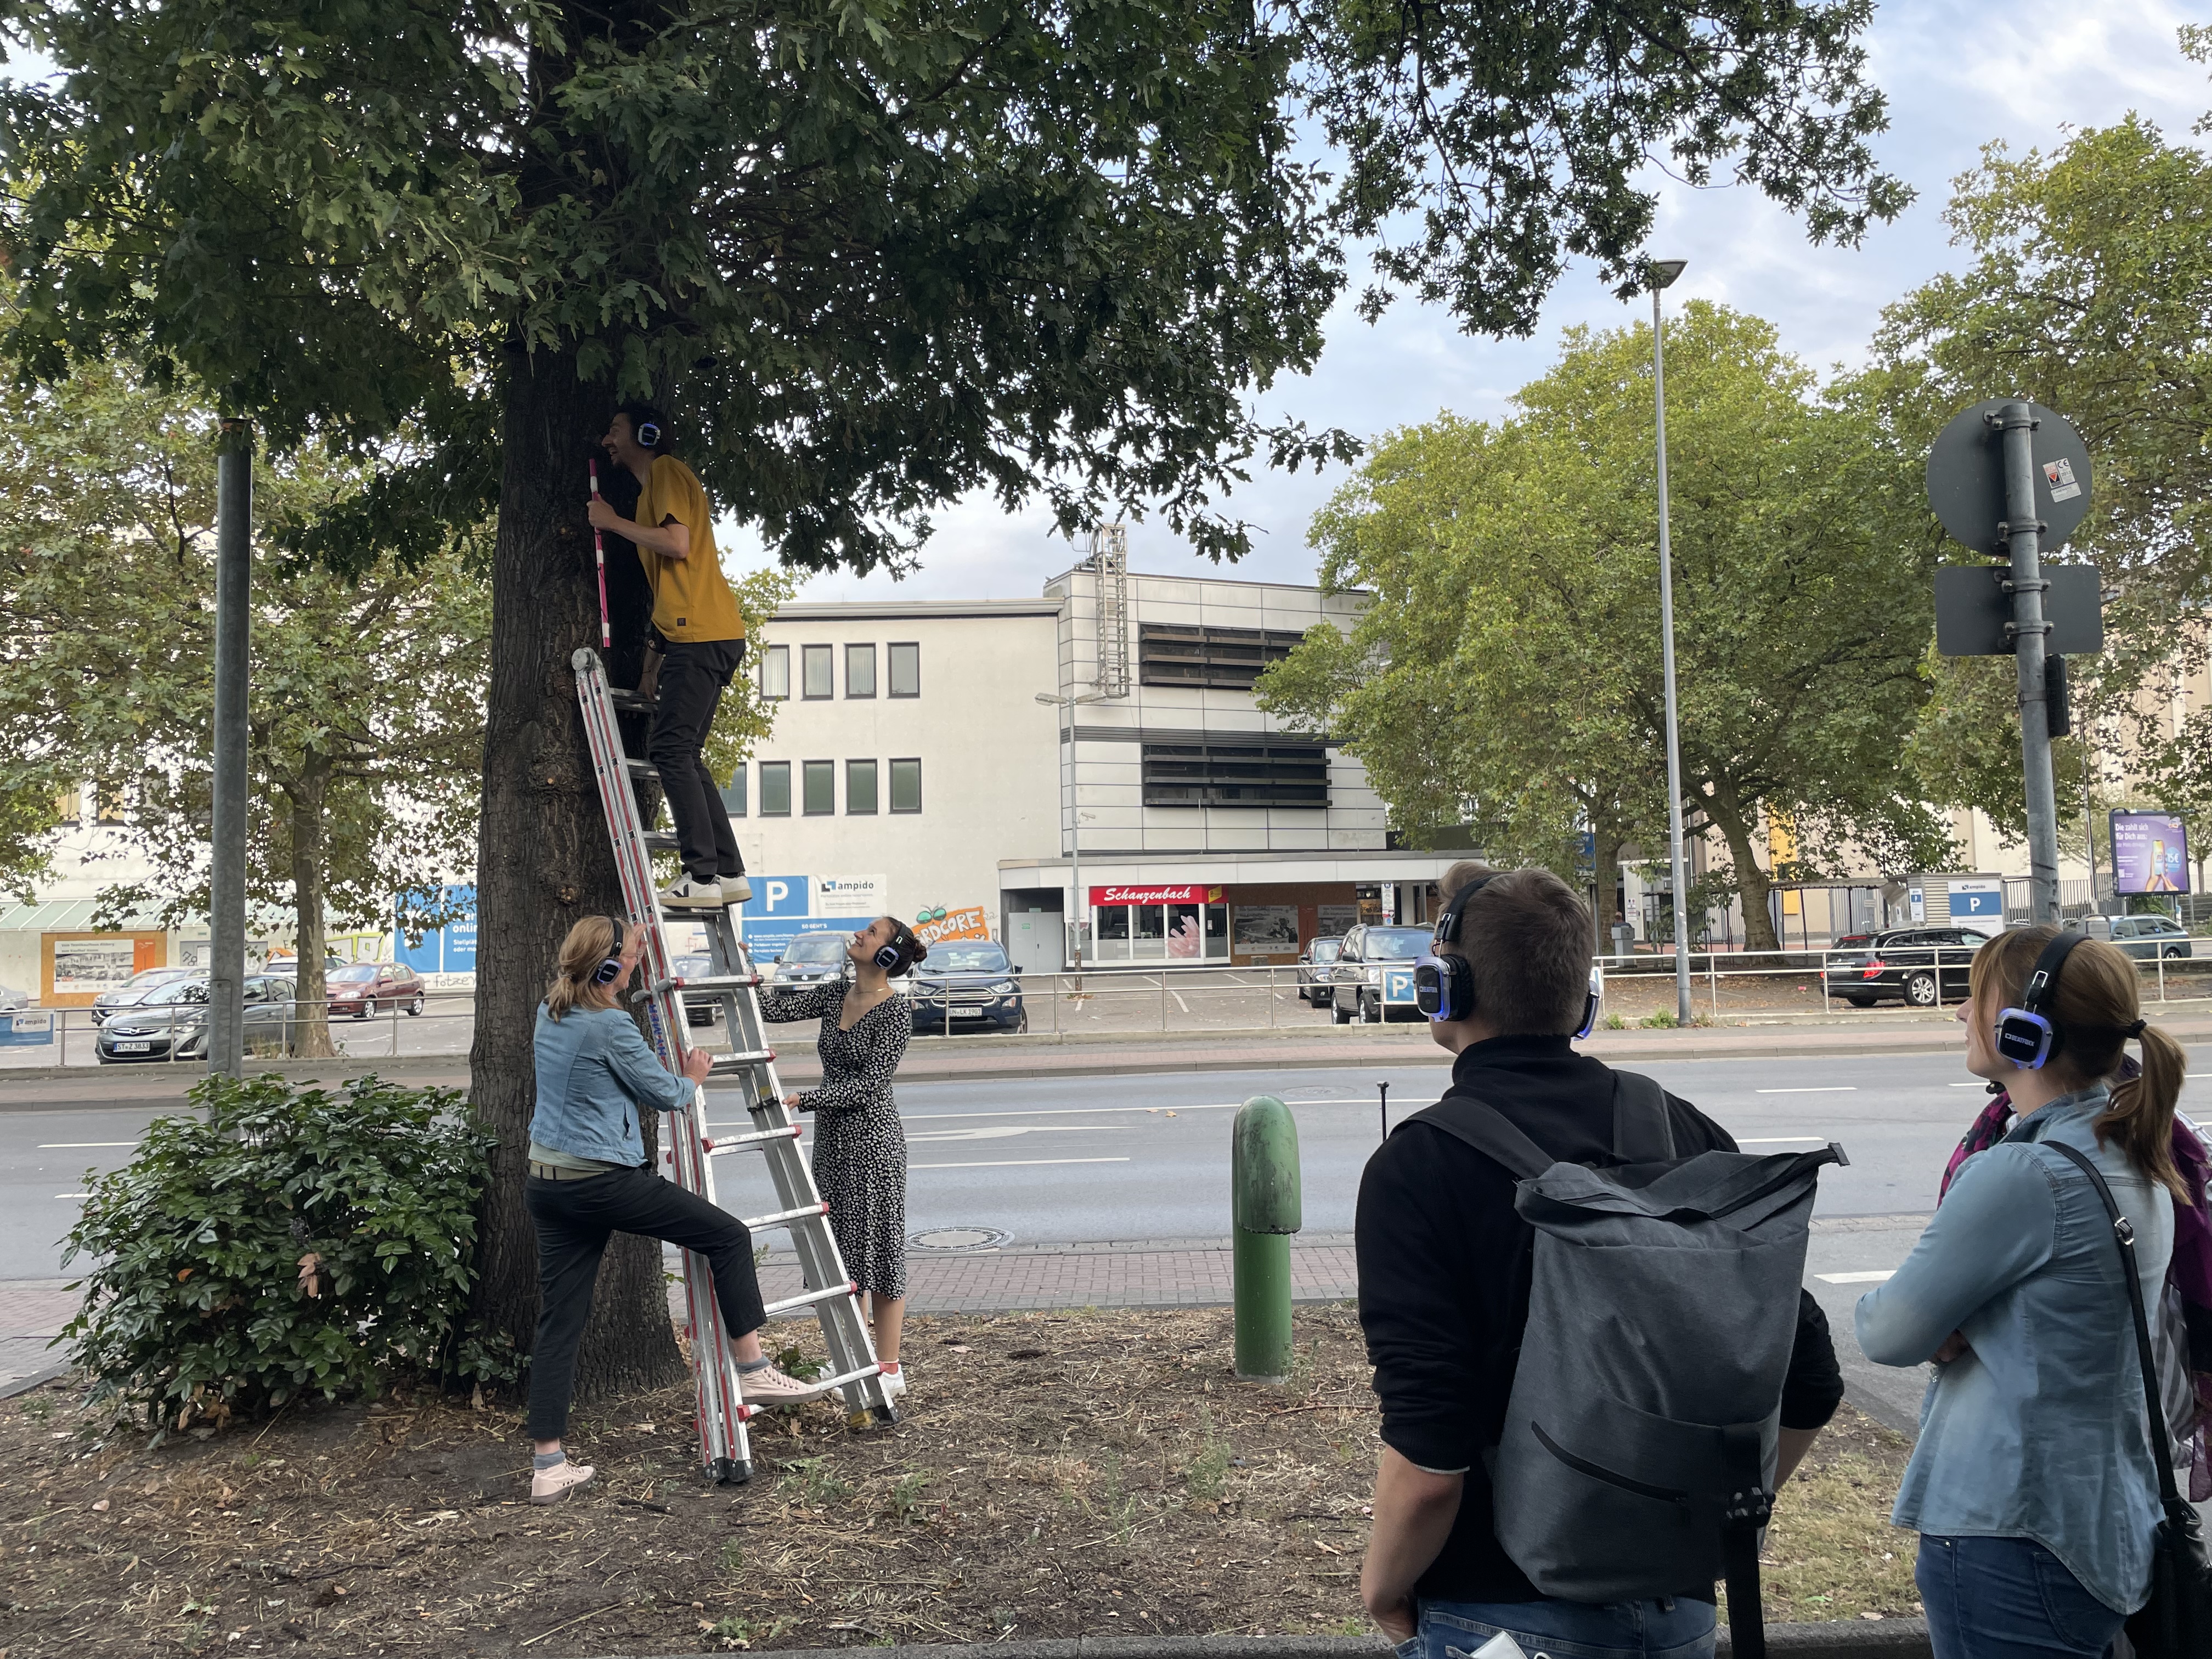 Das Bild zeigt einen Mann auf einer Leiter. Zwei Frauen halten die Leiter fest, die an einem Baum lehnt. Zwei Menschen mit Kopfhörern beobachten.